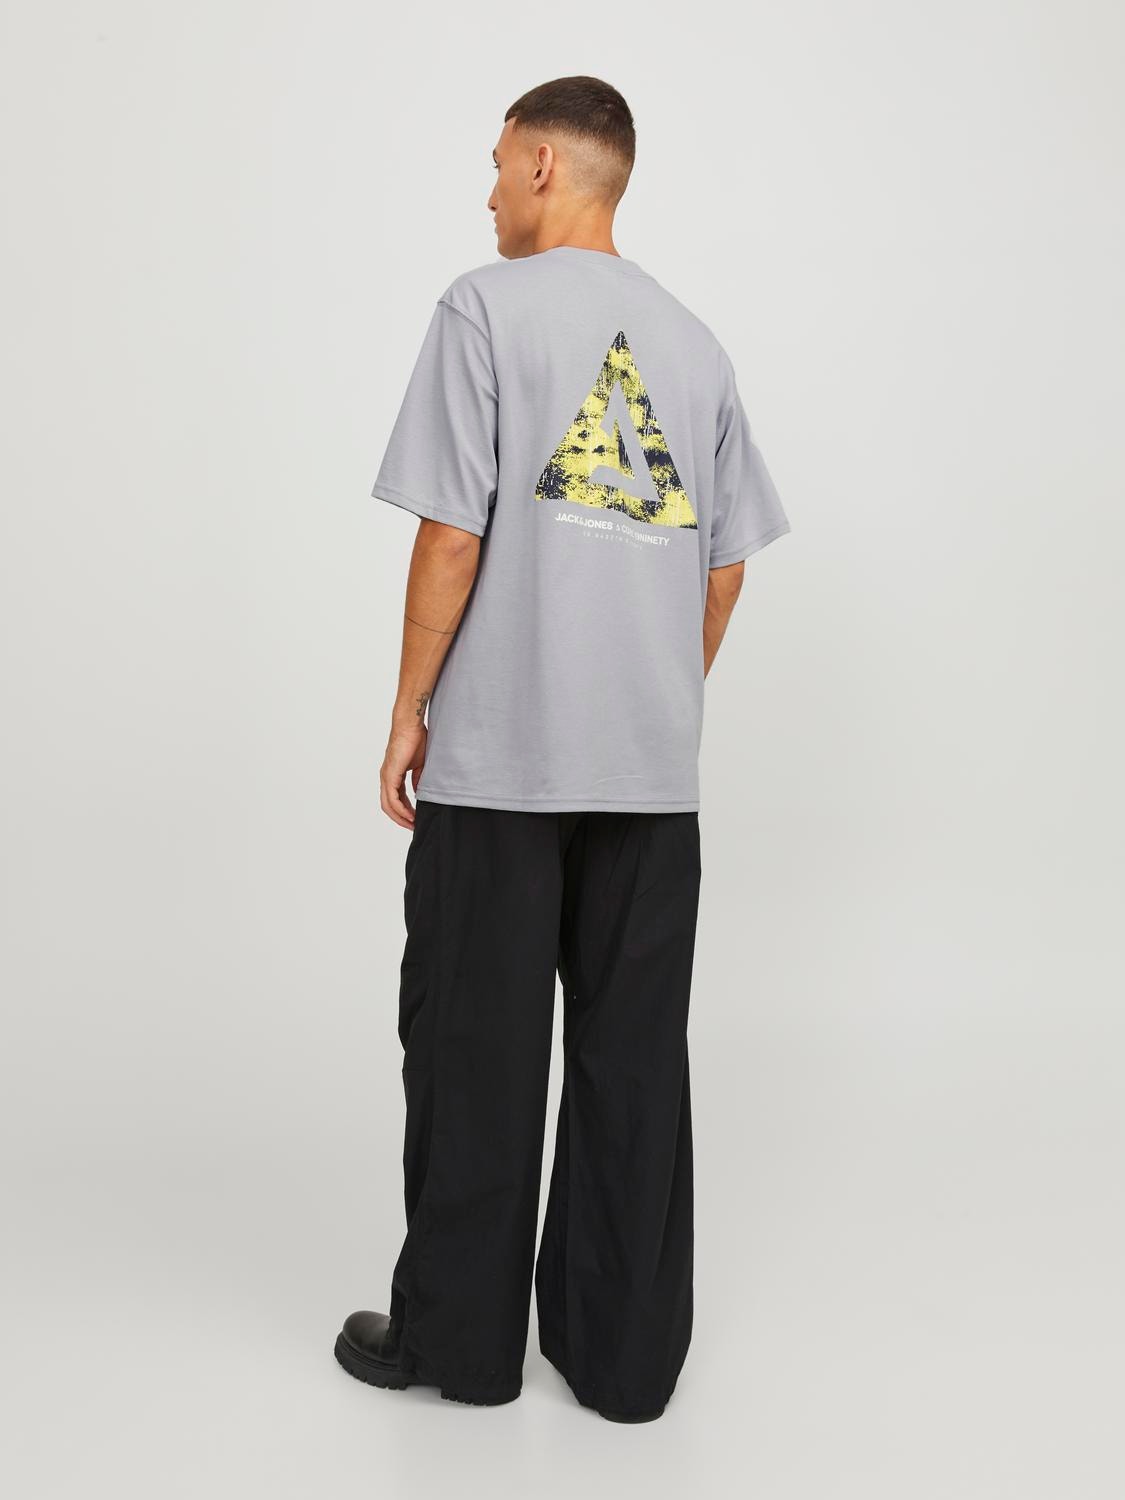 Jack & Jones Gedruckt Rundhals T-shirt -High-rise - 12253435